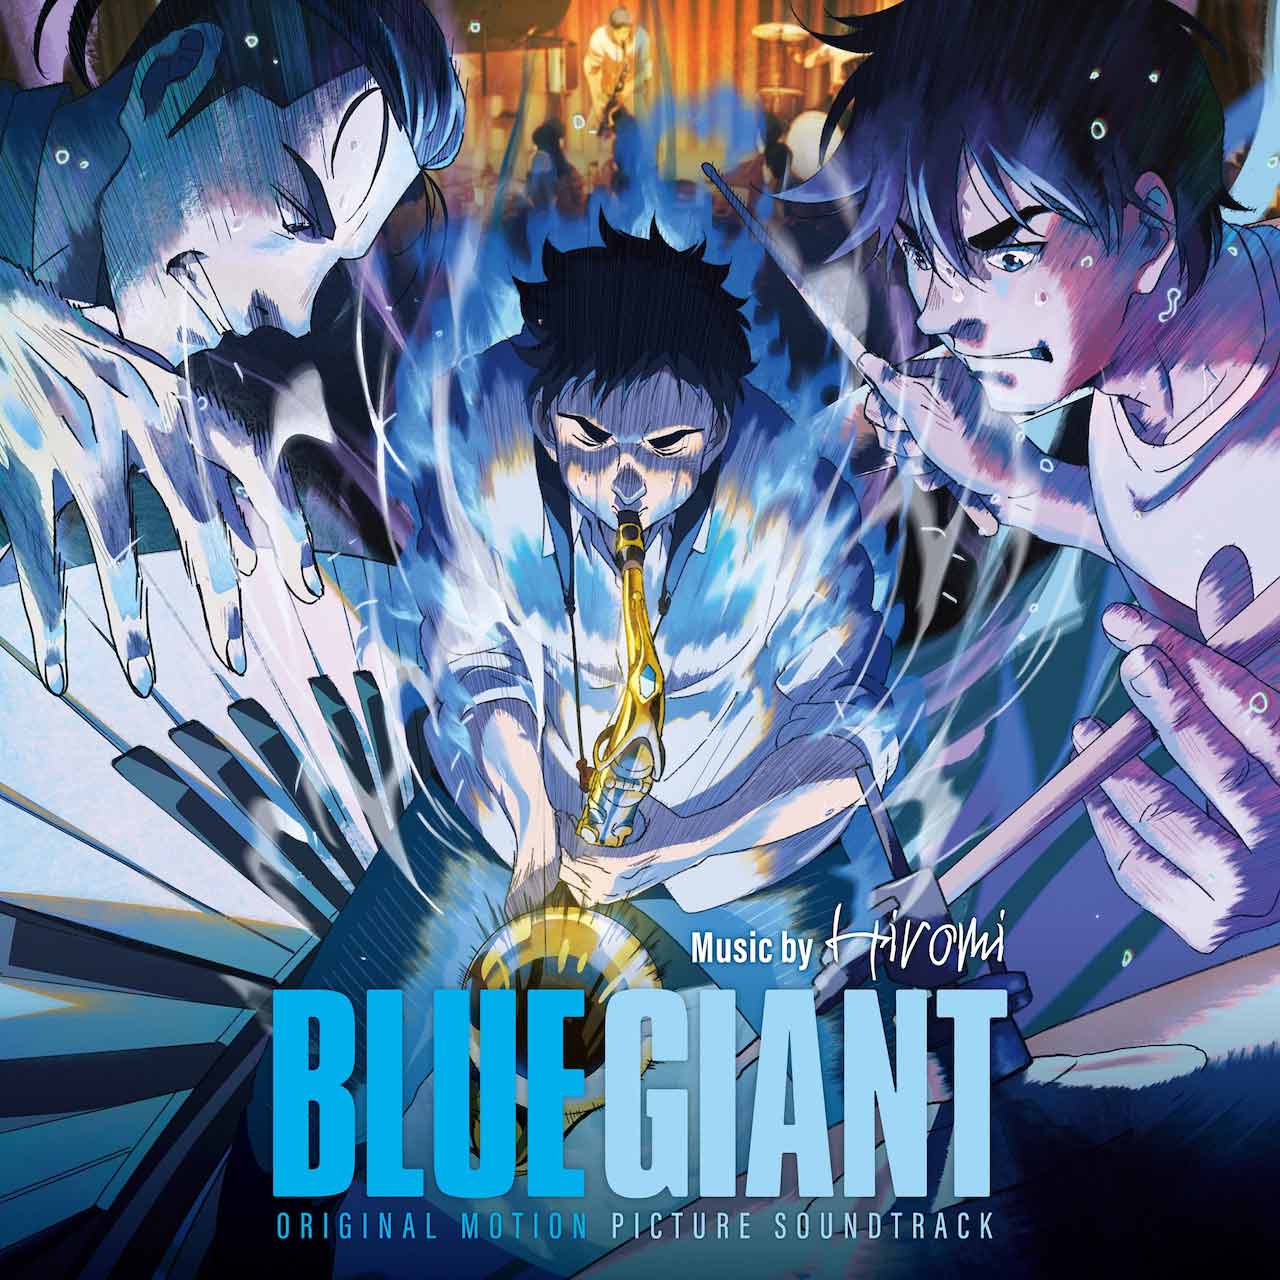 Blue Giant Original Motion Picture Soundtrack Set For September